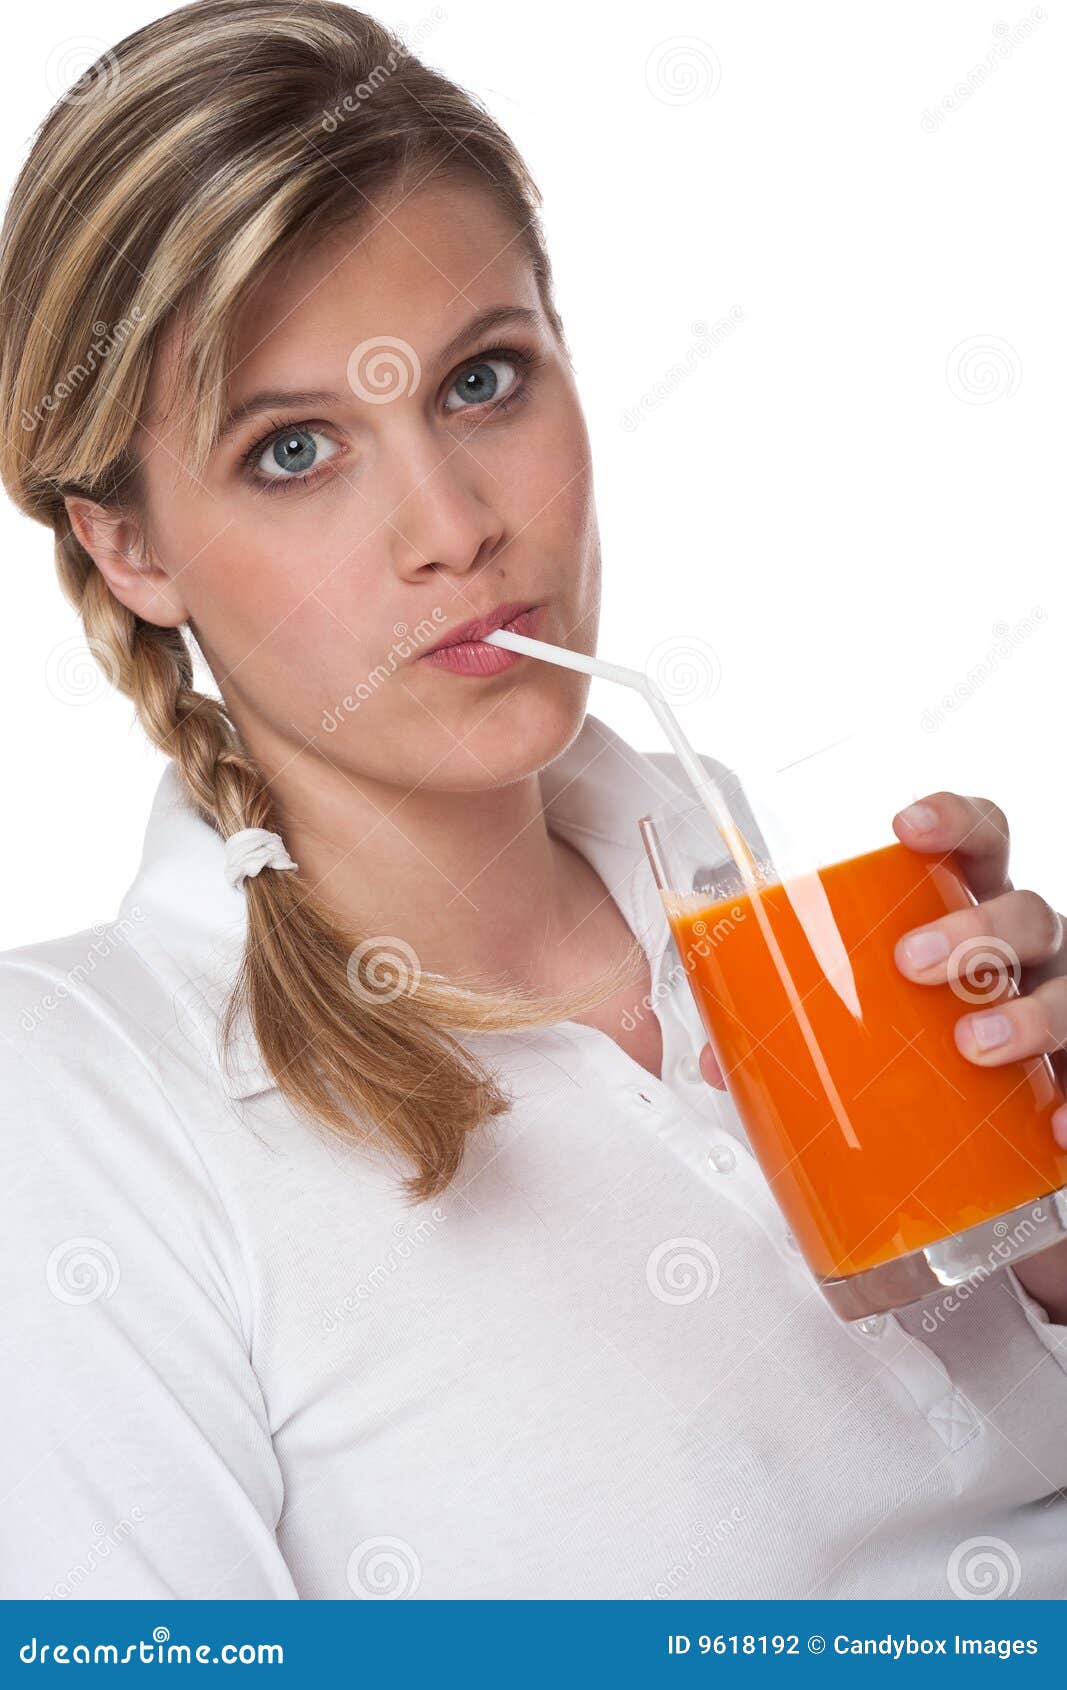 Пить сок через трубочку. Человек пьет из трубочки. Женщина пьет из трубочки. Человек пьет сок из трубочки. Человек пьет из трубочки через человека.